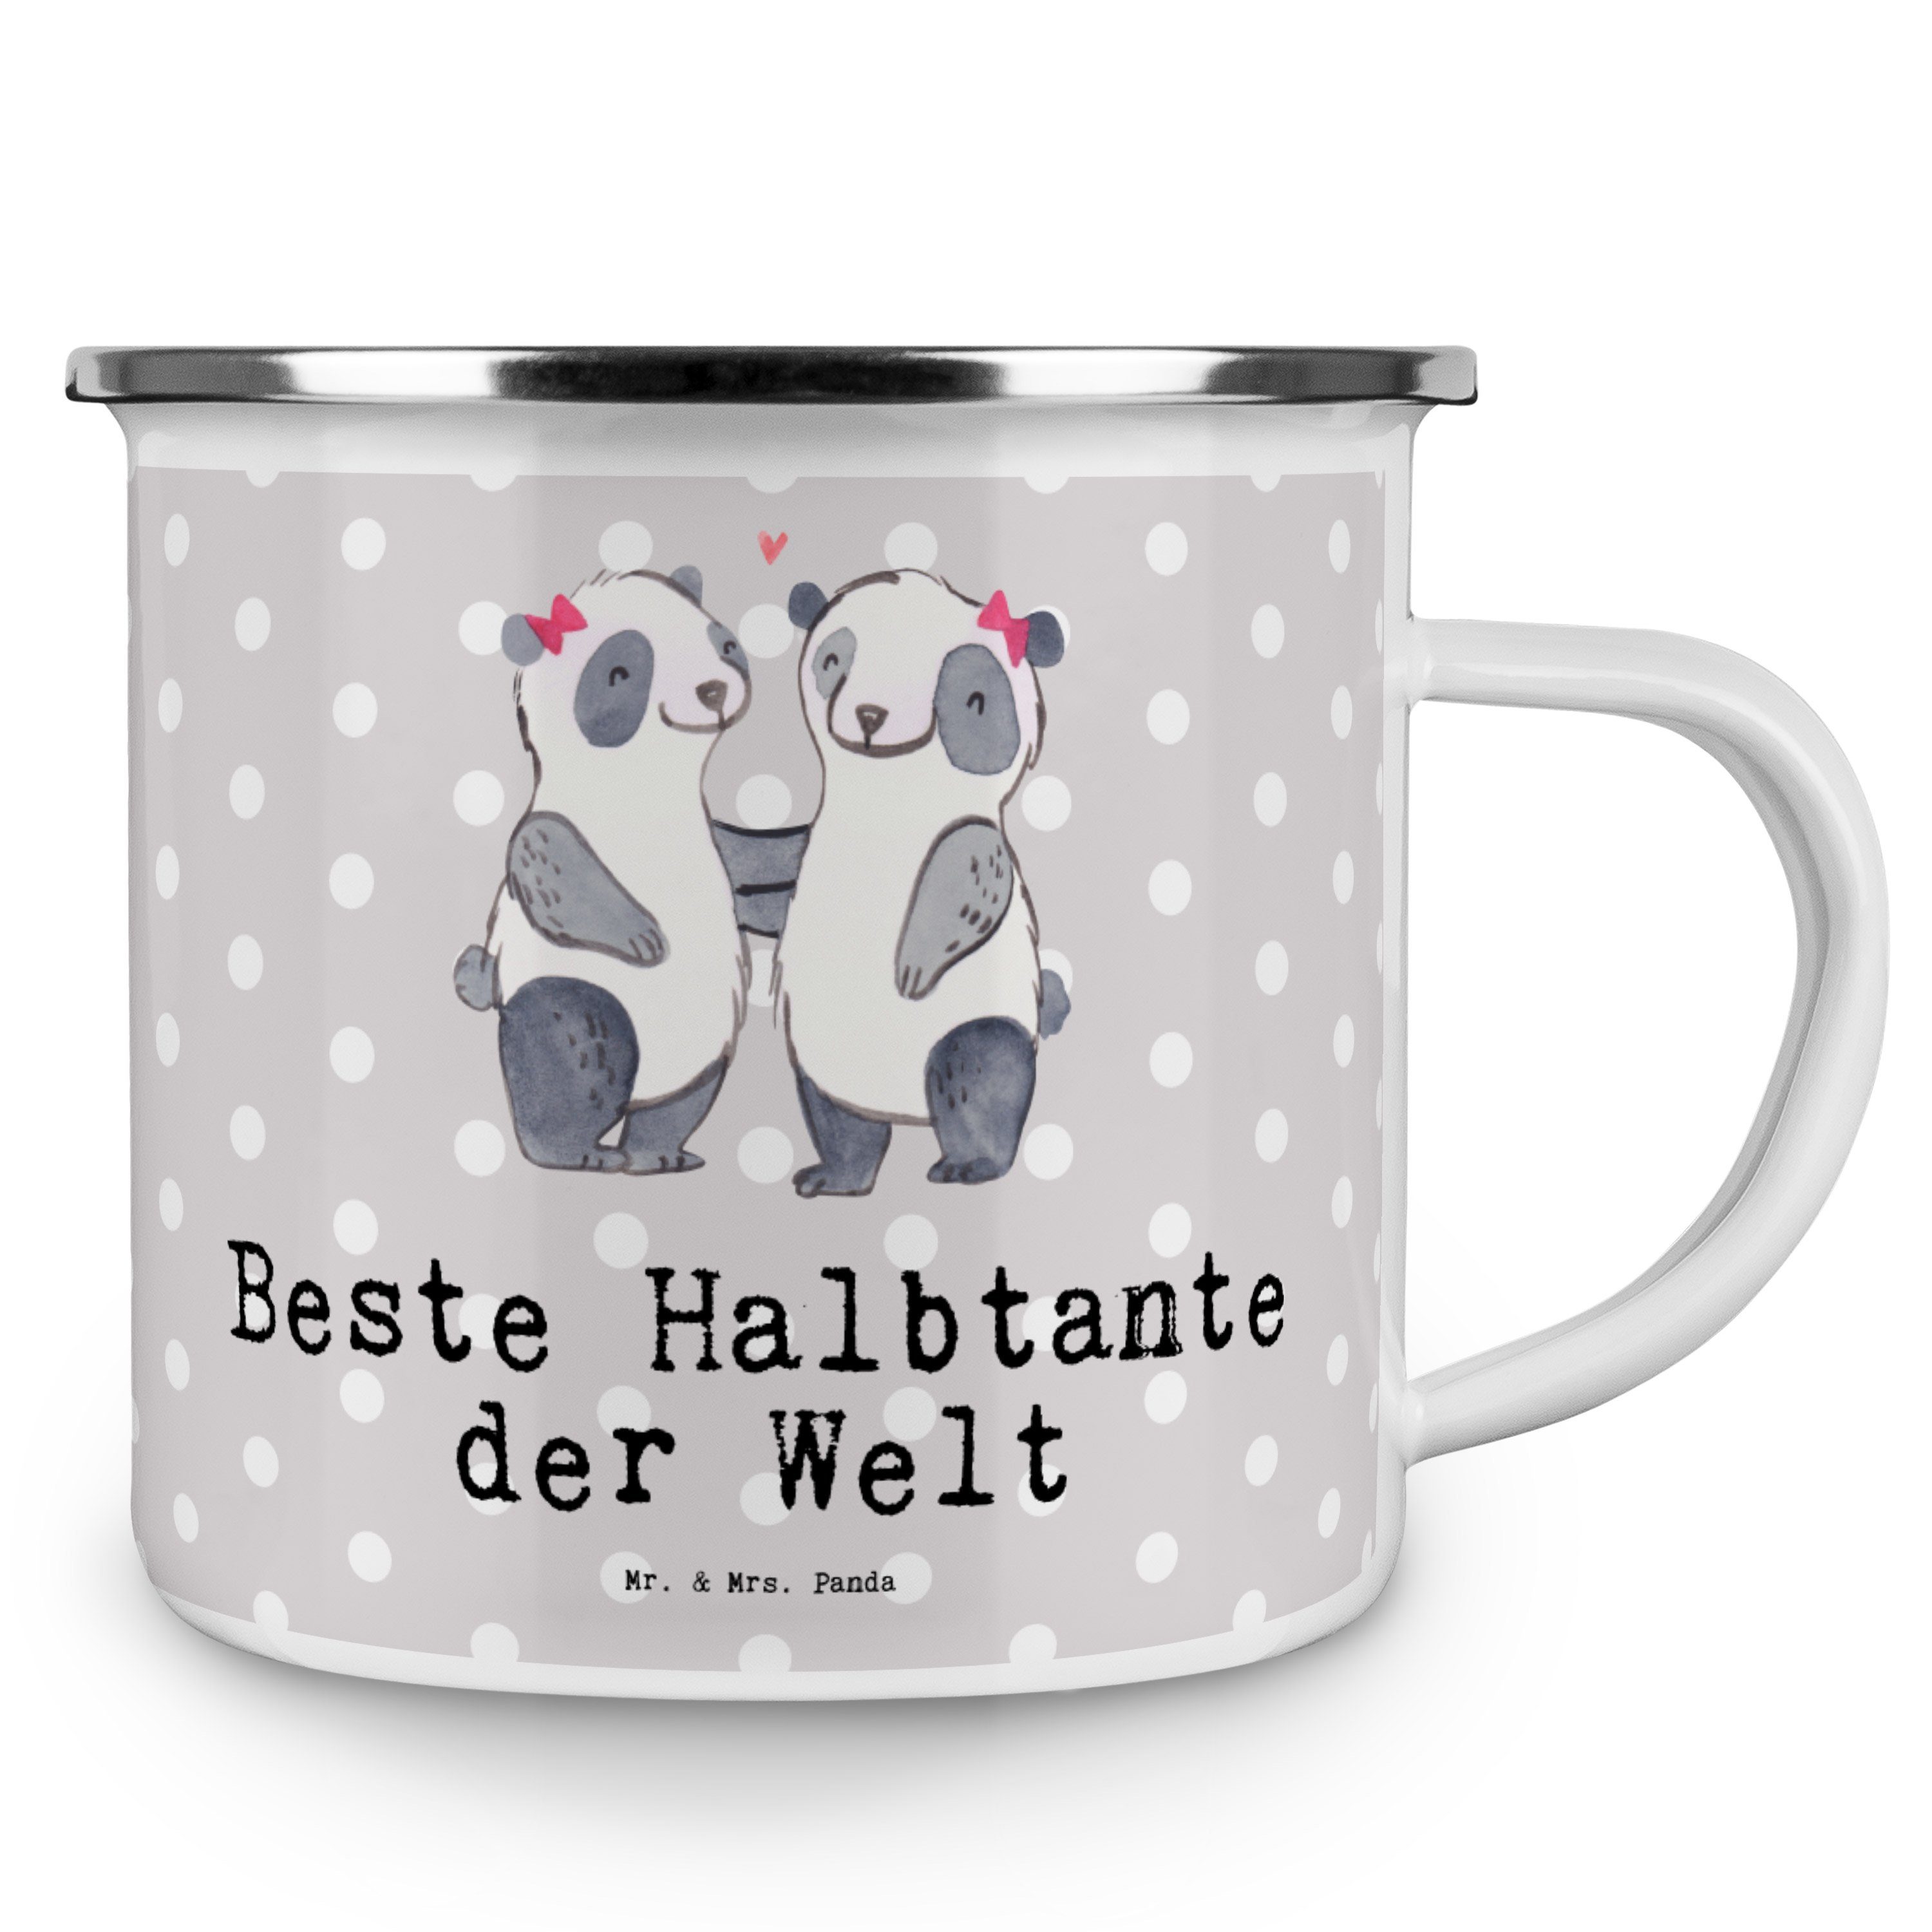 Mr. Halbtante Emaille der Emaille Pastell Panda - Becher Grau - Beste Tri, Welt Mrs. Panda Geschenk, &